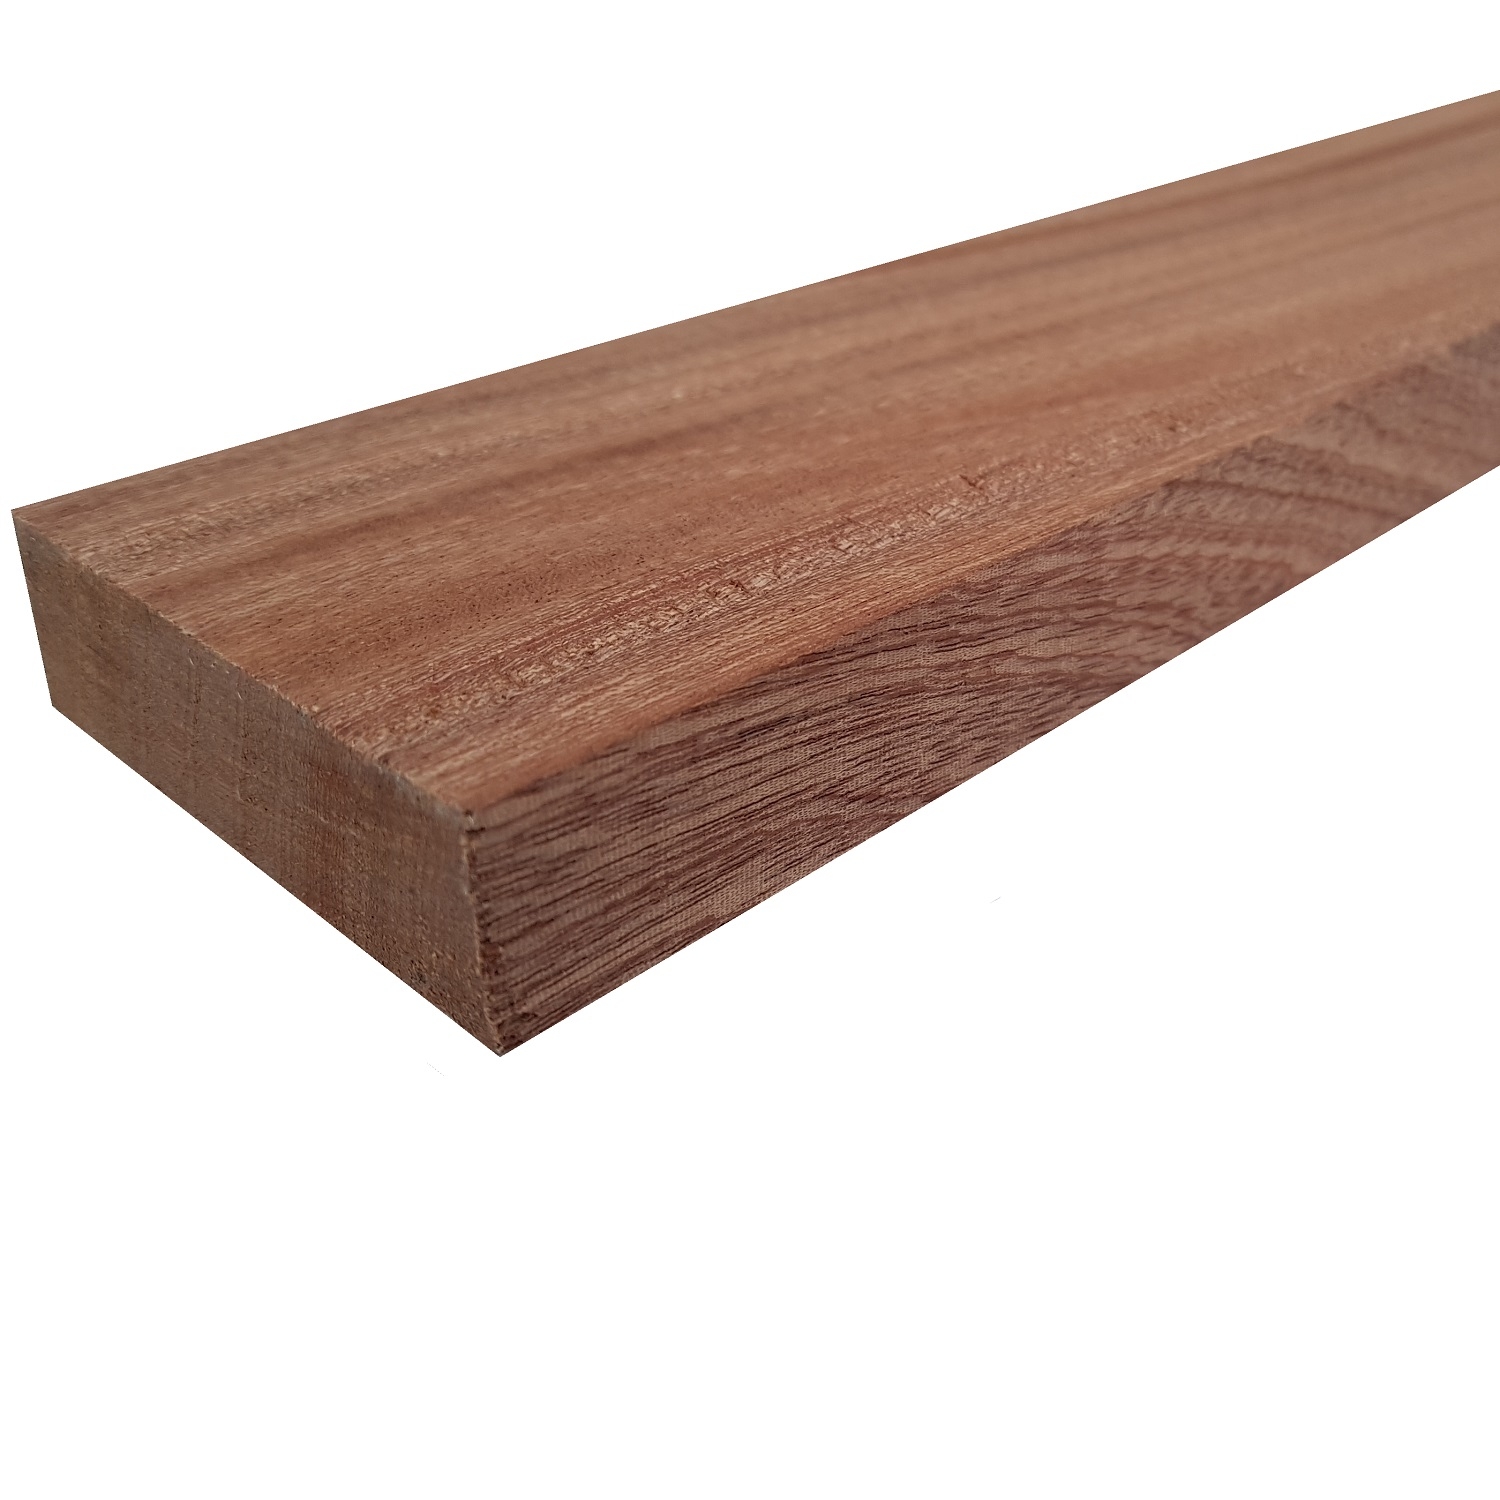 Tavola legno di Mogano Refilato Piallato mm 21 x 130 x 3000